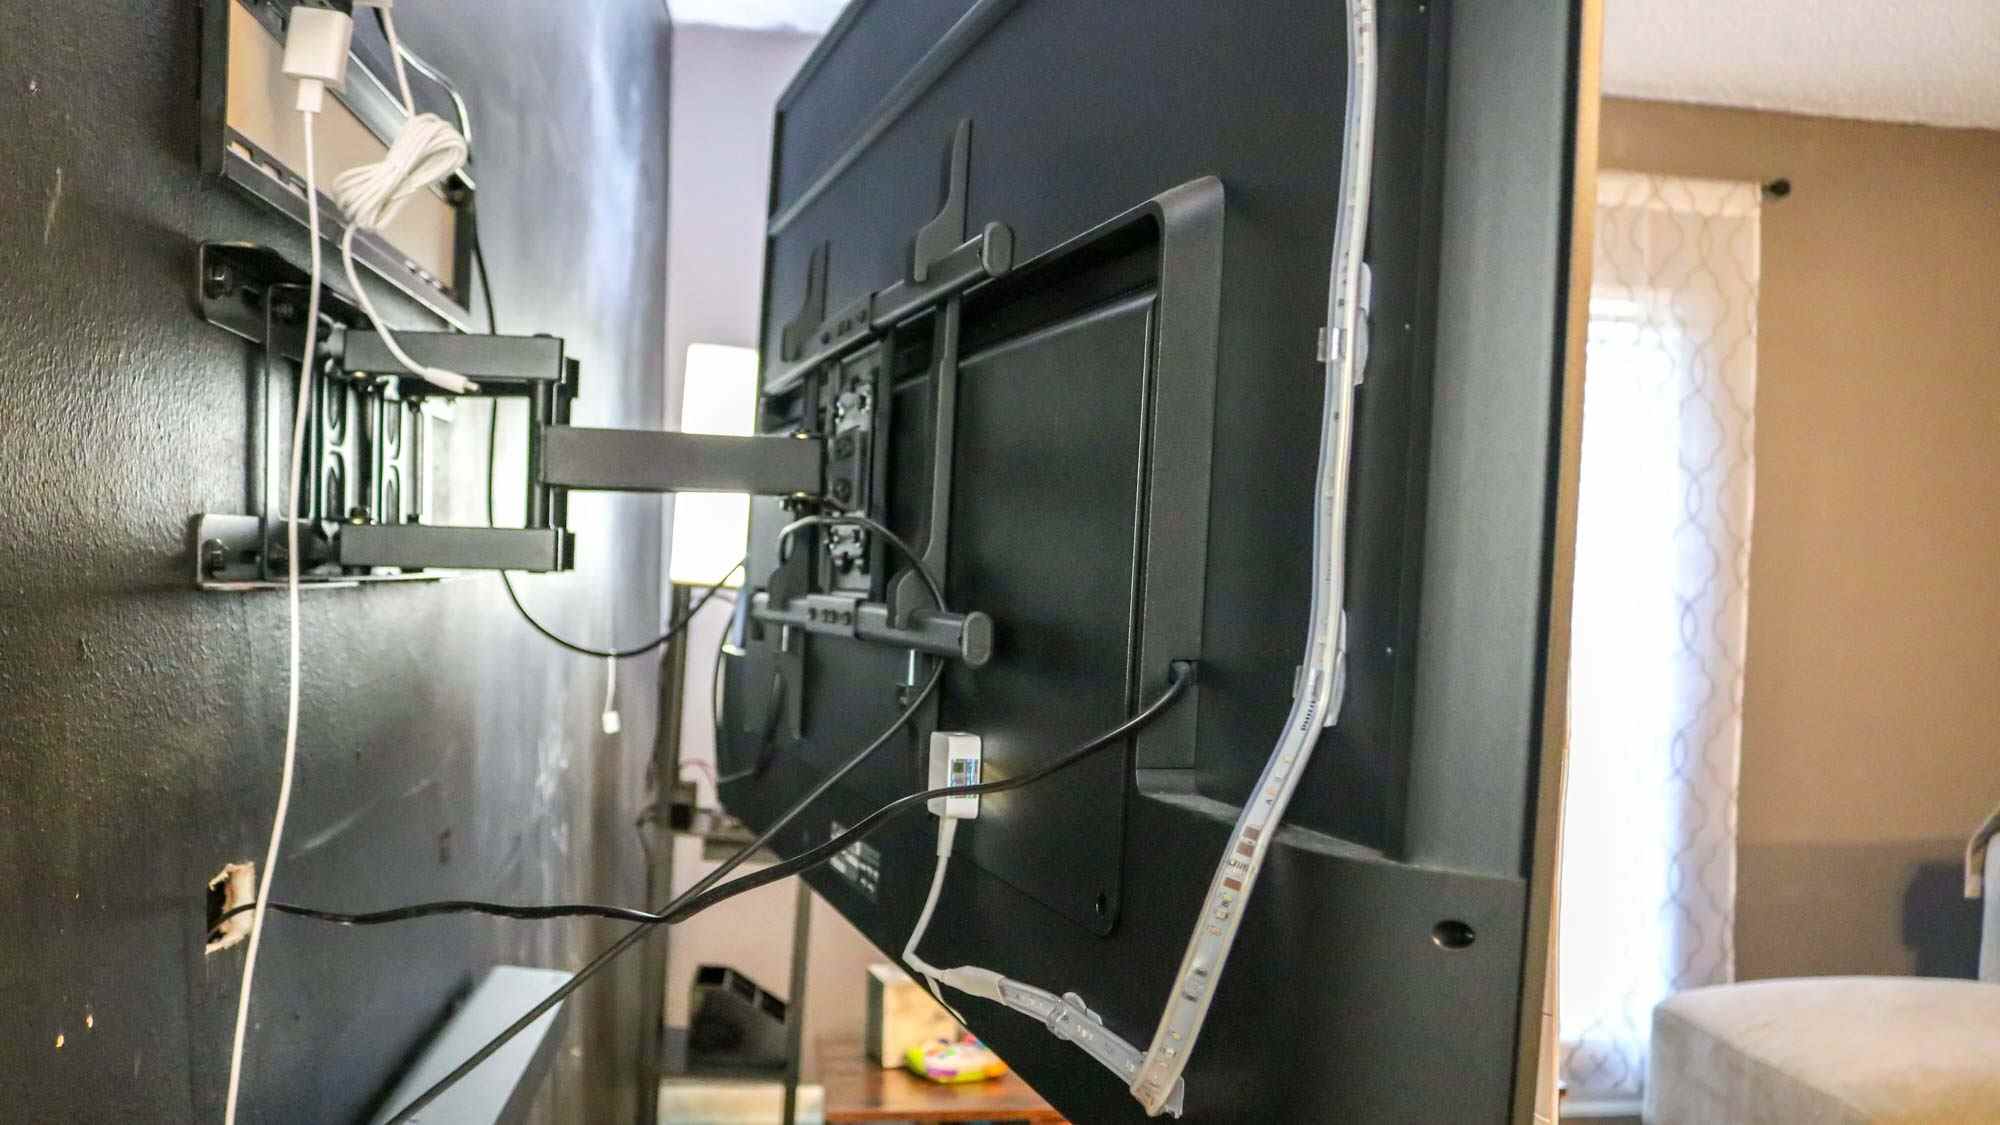 Un téléviseur avec une bande lumineuse montée à l'arrière